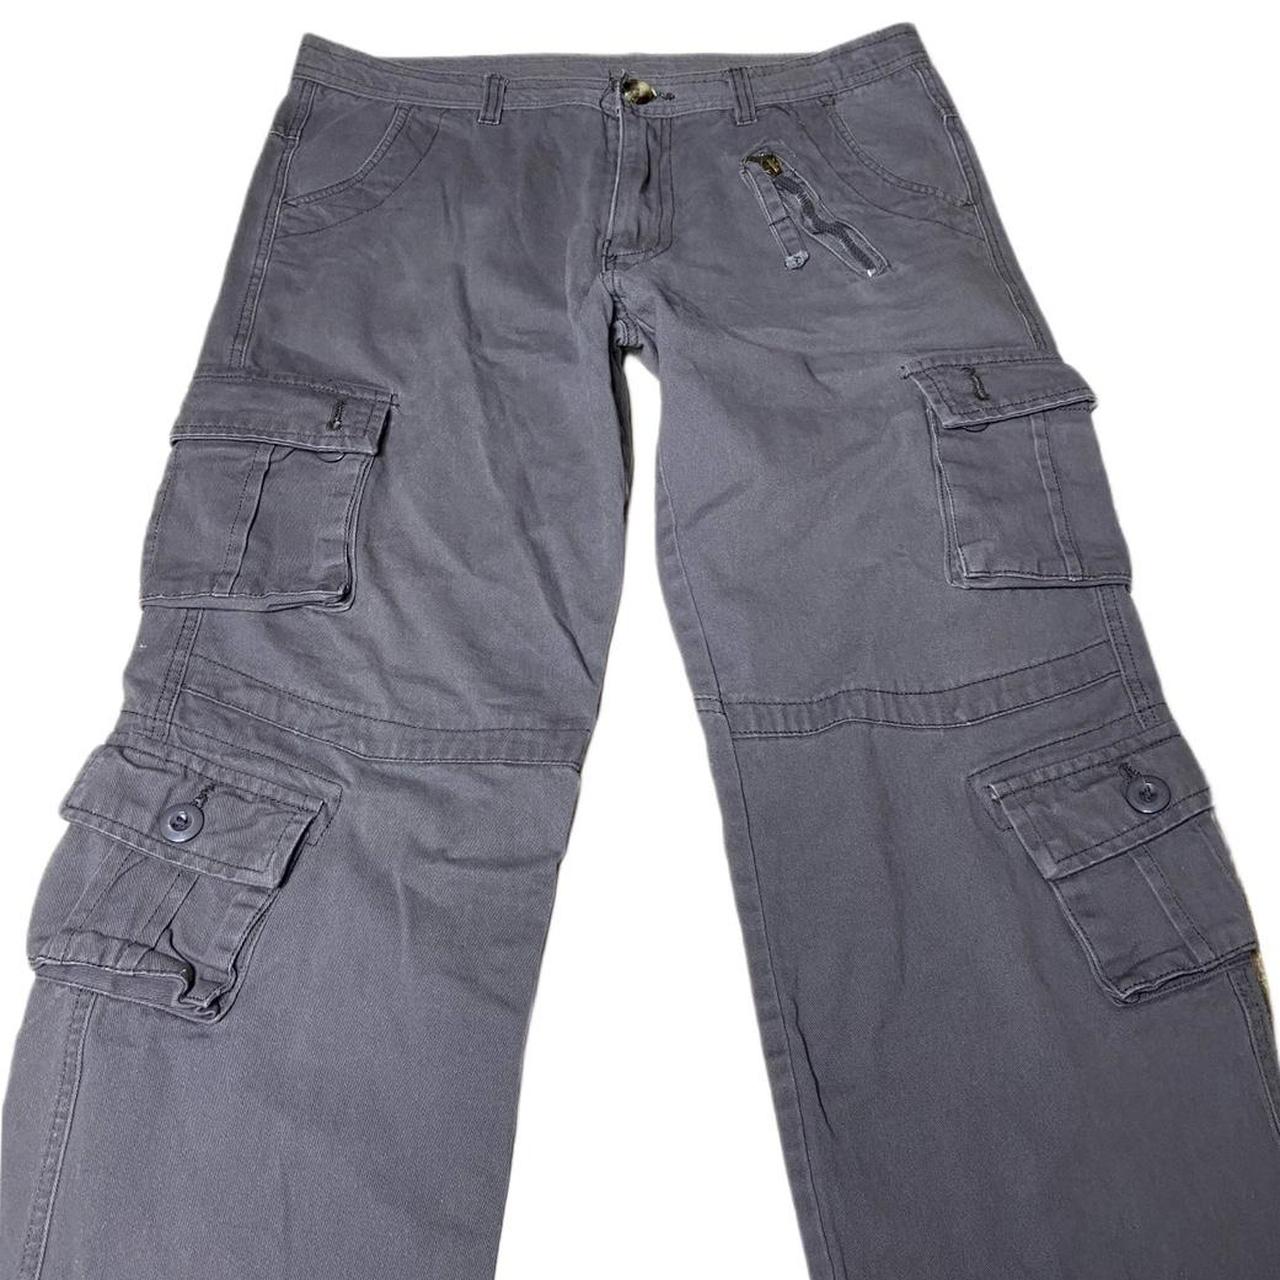 men’s grey cargo pants • size 34 waist: 17... - Depop